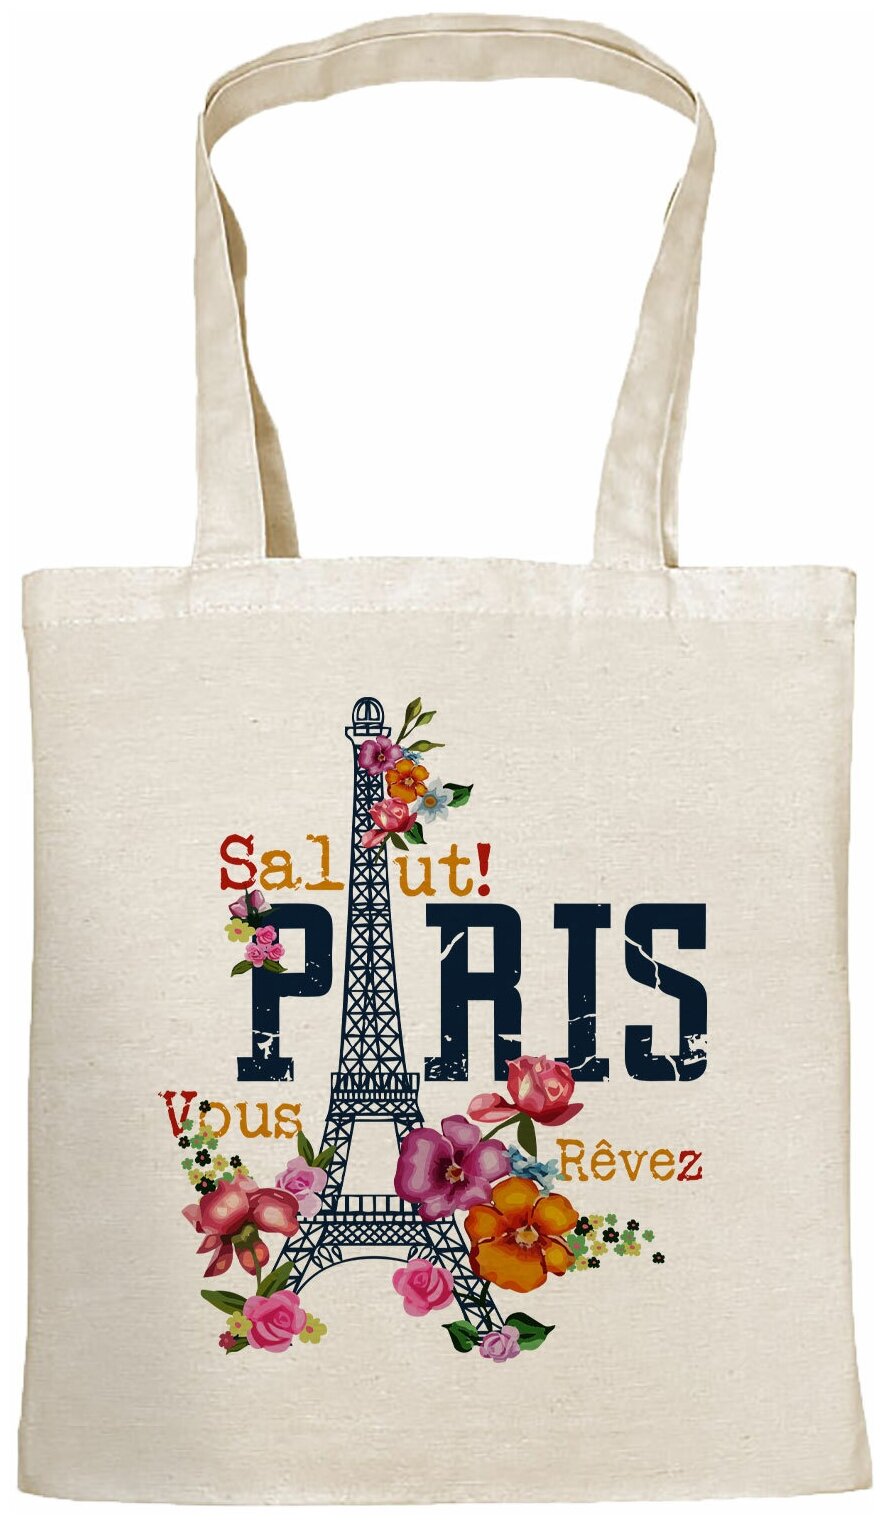 Сумка шоппер Gerasim шоппер с принтом "Salut Paris!" шопер авоська холщовая с рисунком в подарок, красный, бежевый